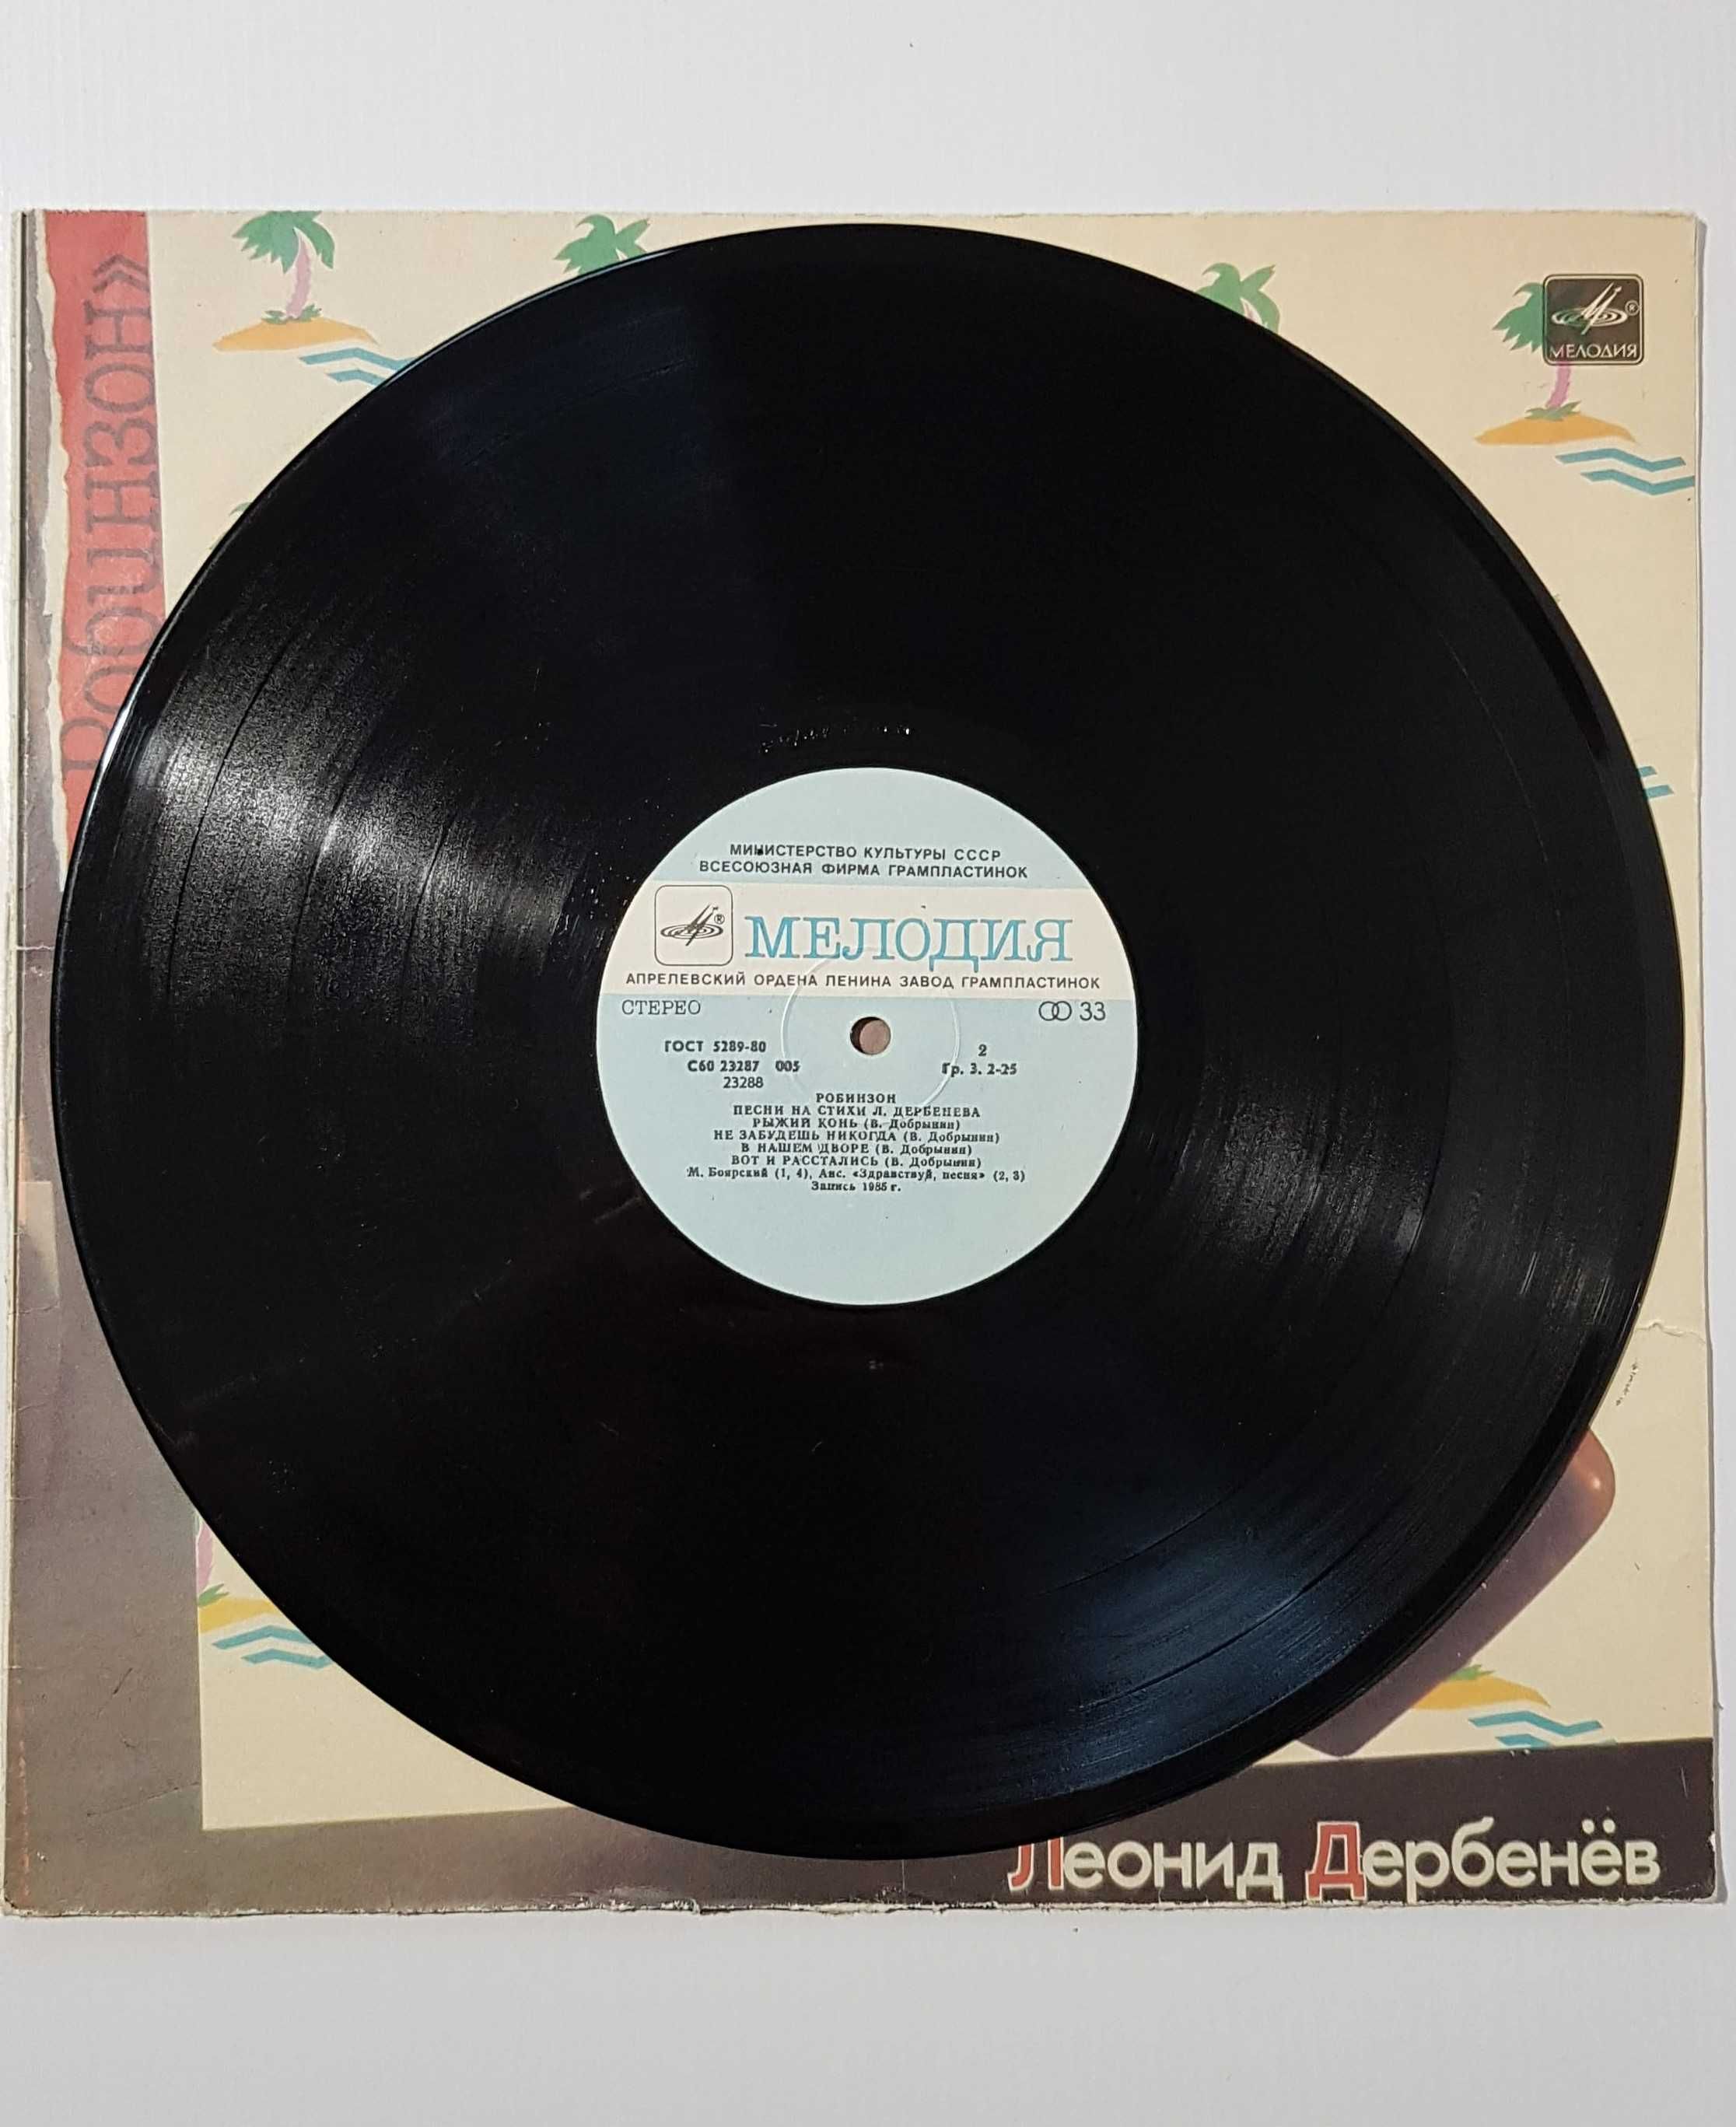 Пластинка виниловая «Робинзон», 1985 год